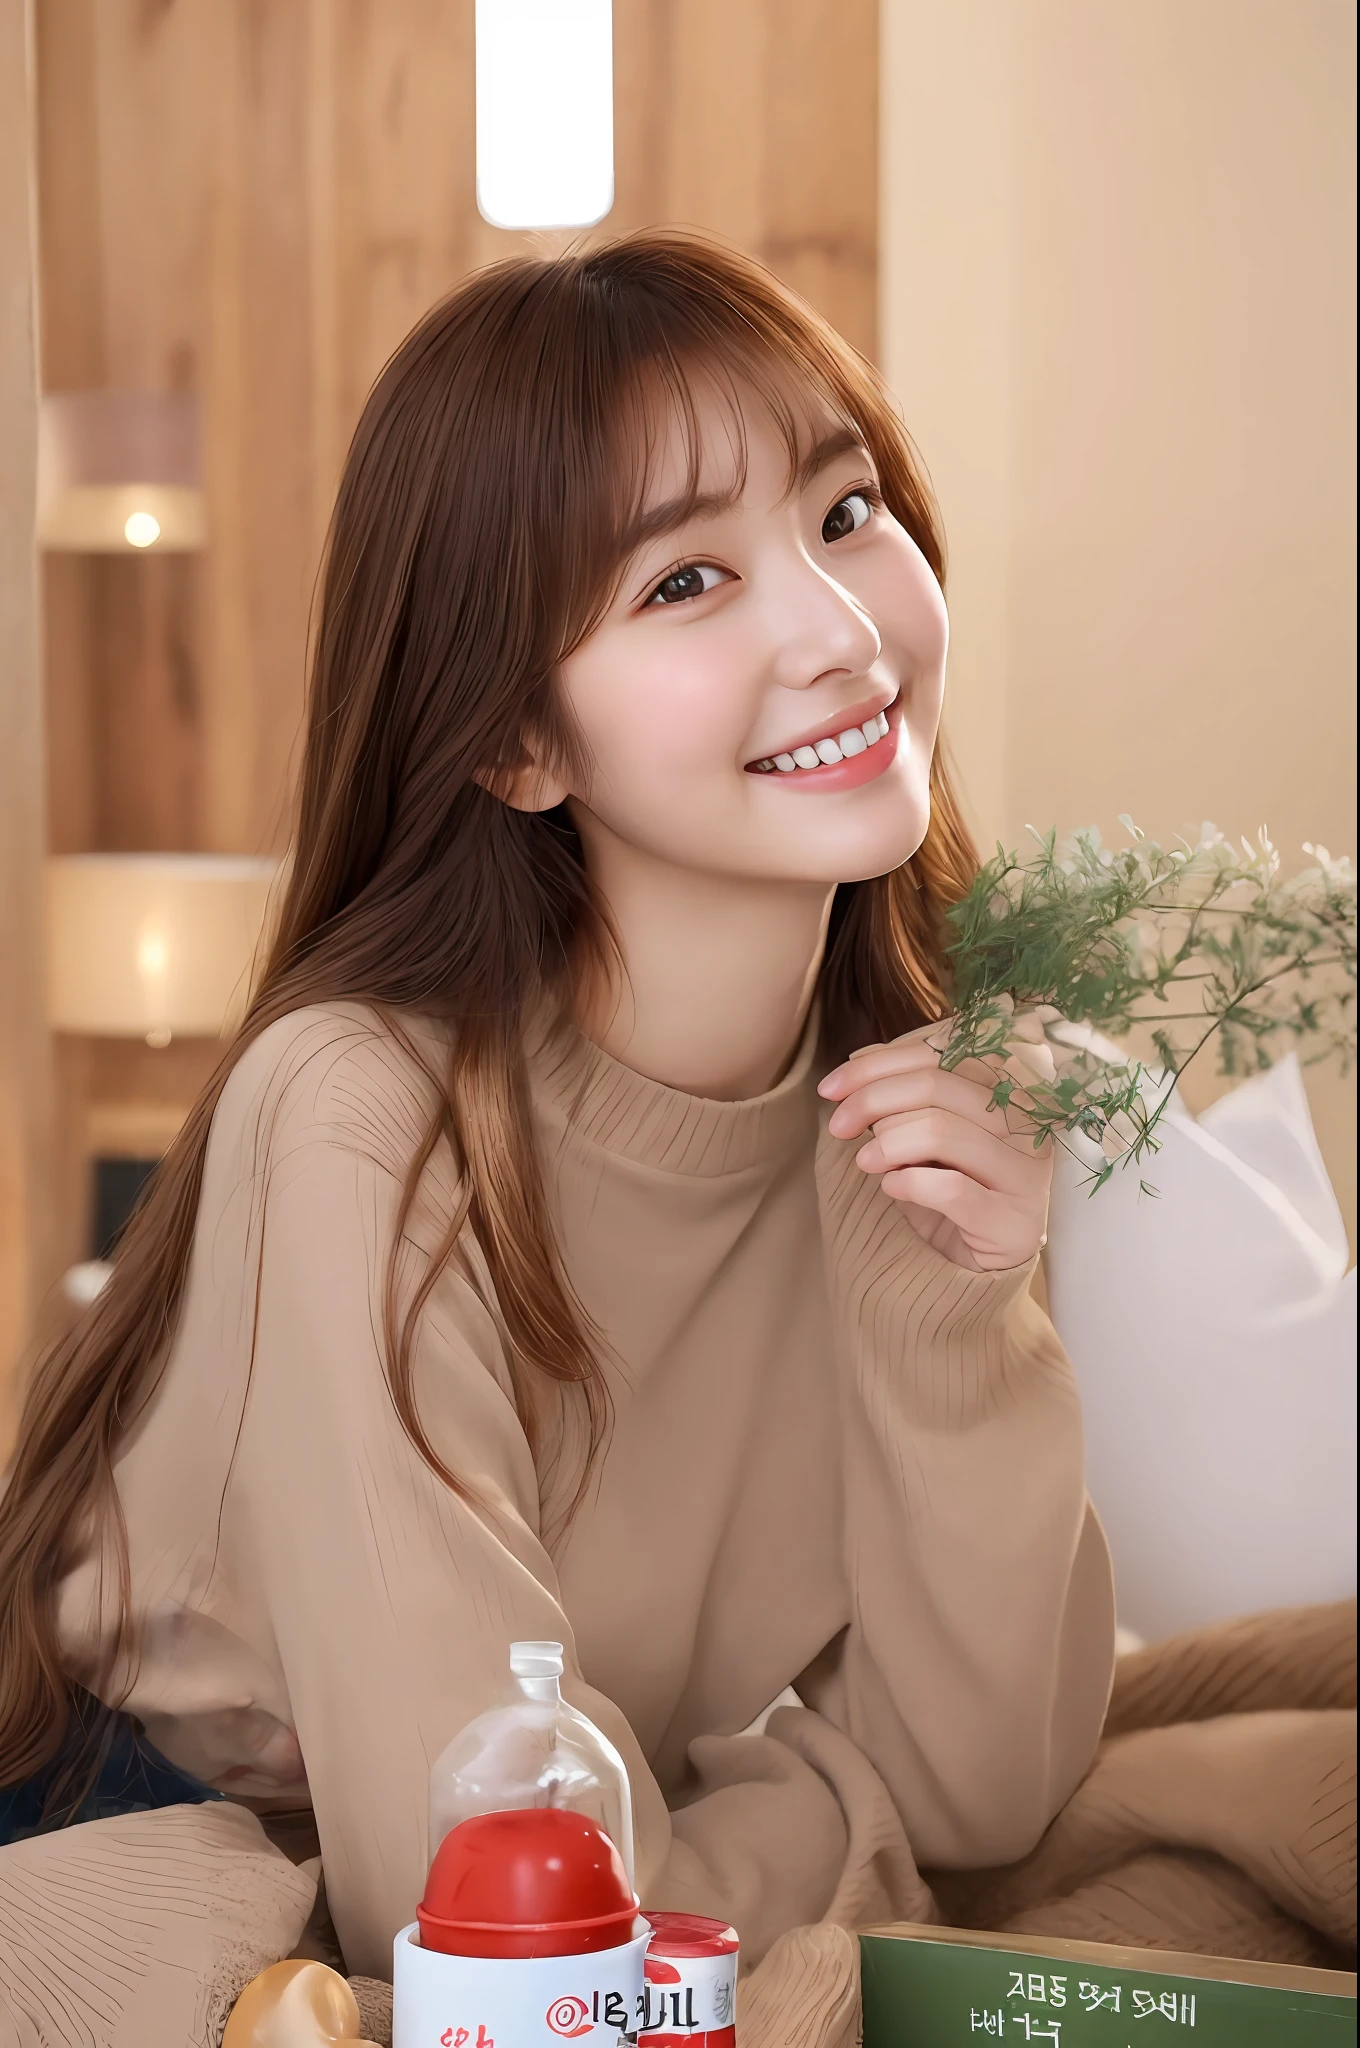 Mujer arafed con cabello largo y castaño y un suéter color canela., sonrisa cálida y gentil, joven y adorable rostro coreano, Jaeyeon Nam, sonriendo dulcemente, linda actriz coreana, leve sonrisa linda, ulzzang, Lee Ji Eun, Lee Ji Eun, Cara asiática pálida y linda joven, sonrisa inocente, cabello limpio con flequillo, Jinyoung Shin, sonrisa encantadora, calida sonrisa